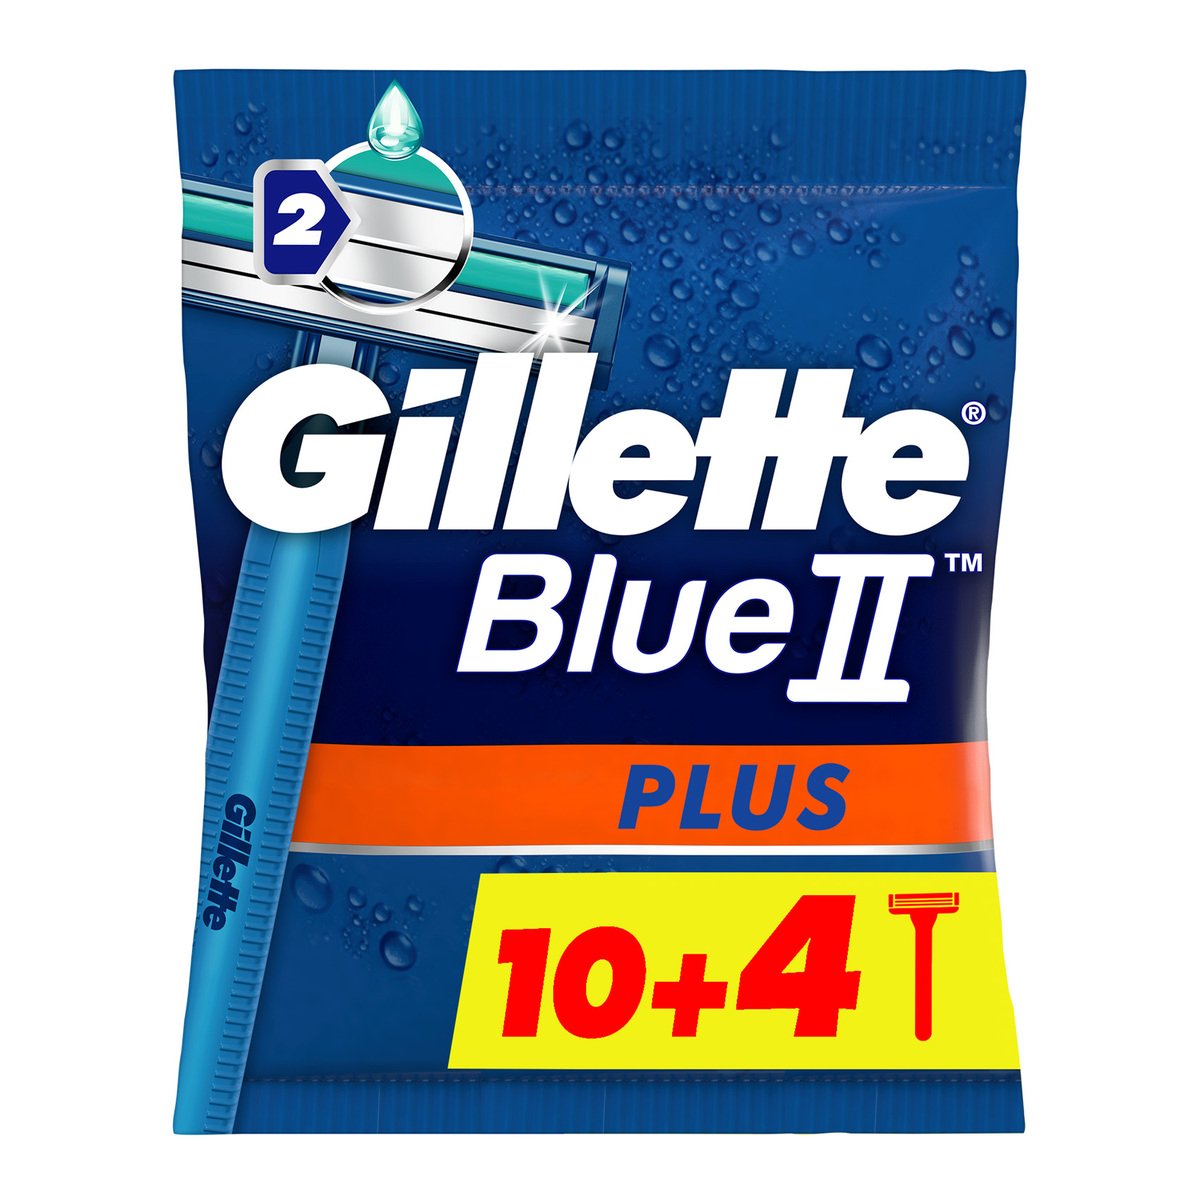 Gillette Blue II Plus Men’s Disposable Razors 14pcs